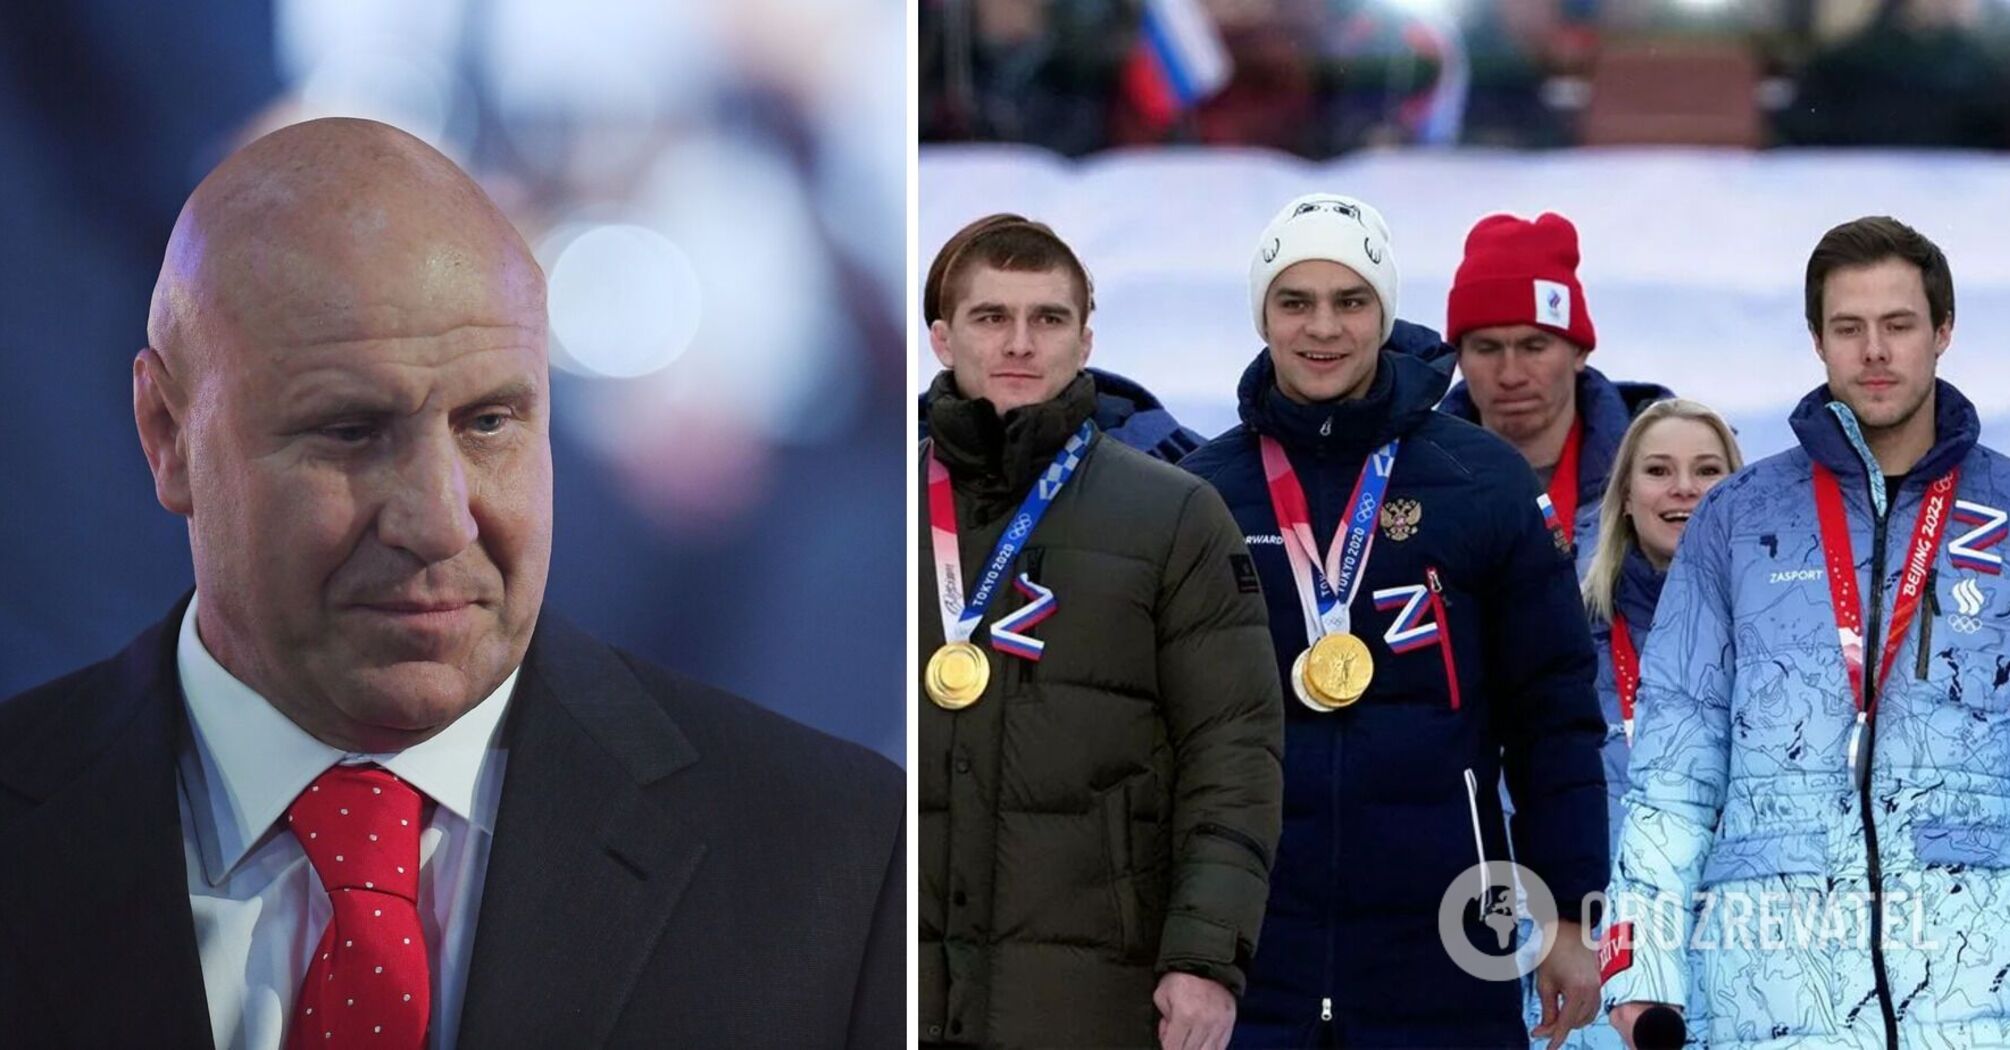 'Na Ukrainie jest absolutne zło': mistrz olimpijski mówi, że Rosjanie są niezwyciężeni, ponieważ 'ten naród wie, jak kochać'